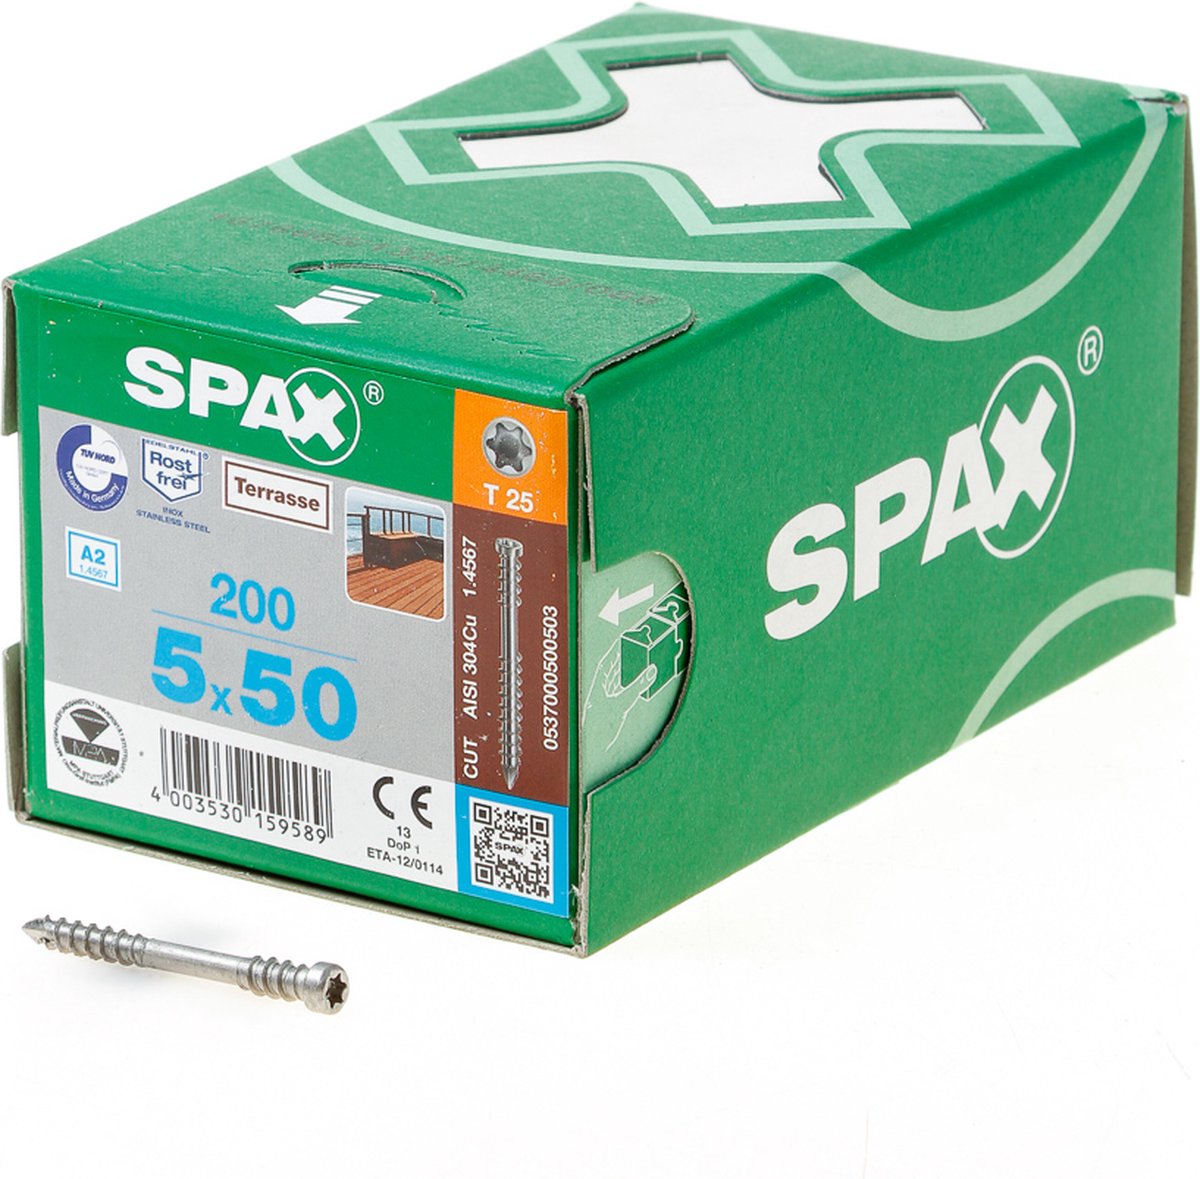 SPAX 537000500503 Terrasschroef, Cilinderkop, 5 x 50, Fixeerschroefdraad, T-STAR plus T25 - blank - 200 stuks